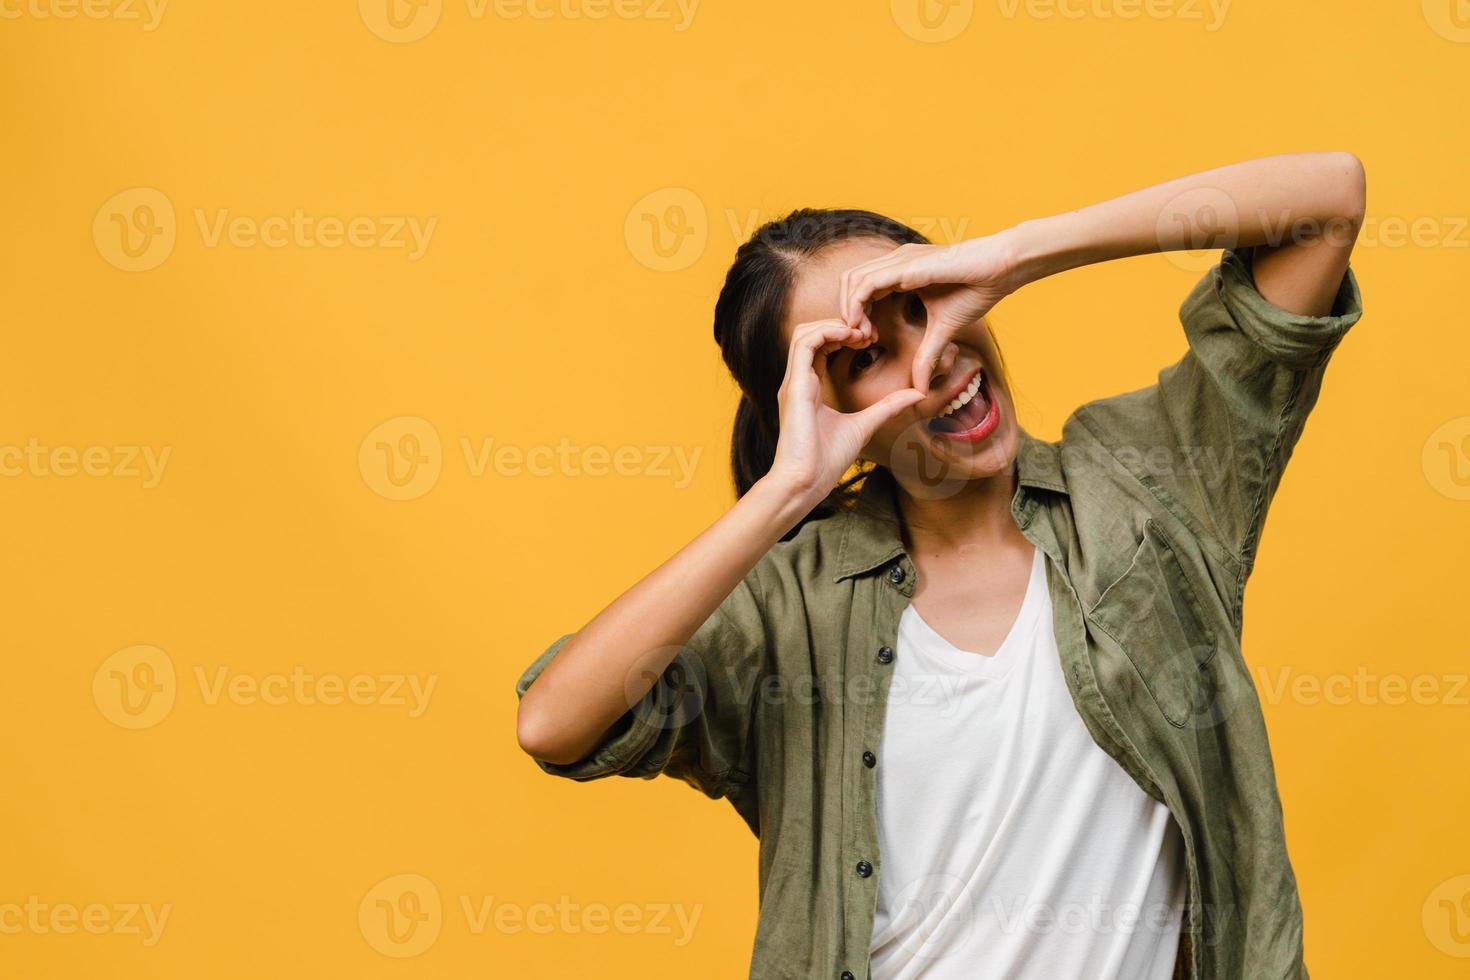 jeune femme asiatique à l'expression positive, sourire largement, vêtue de vêtements décontractés et regardant la caméra sur fond jaune. heureuse adorable femme heureuse se réjouit du succès. concept d'expression faciale. photo